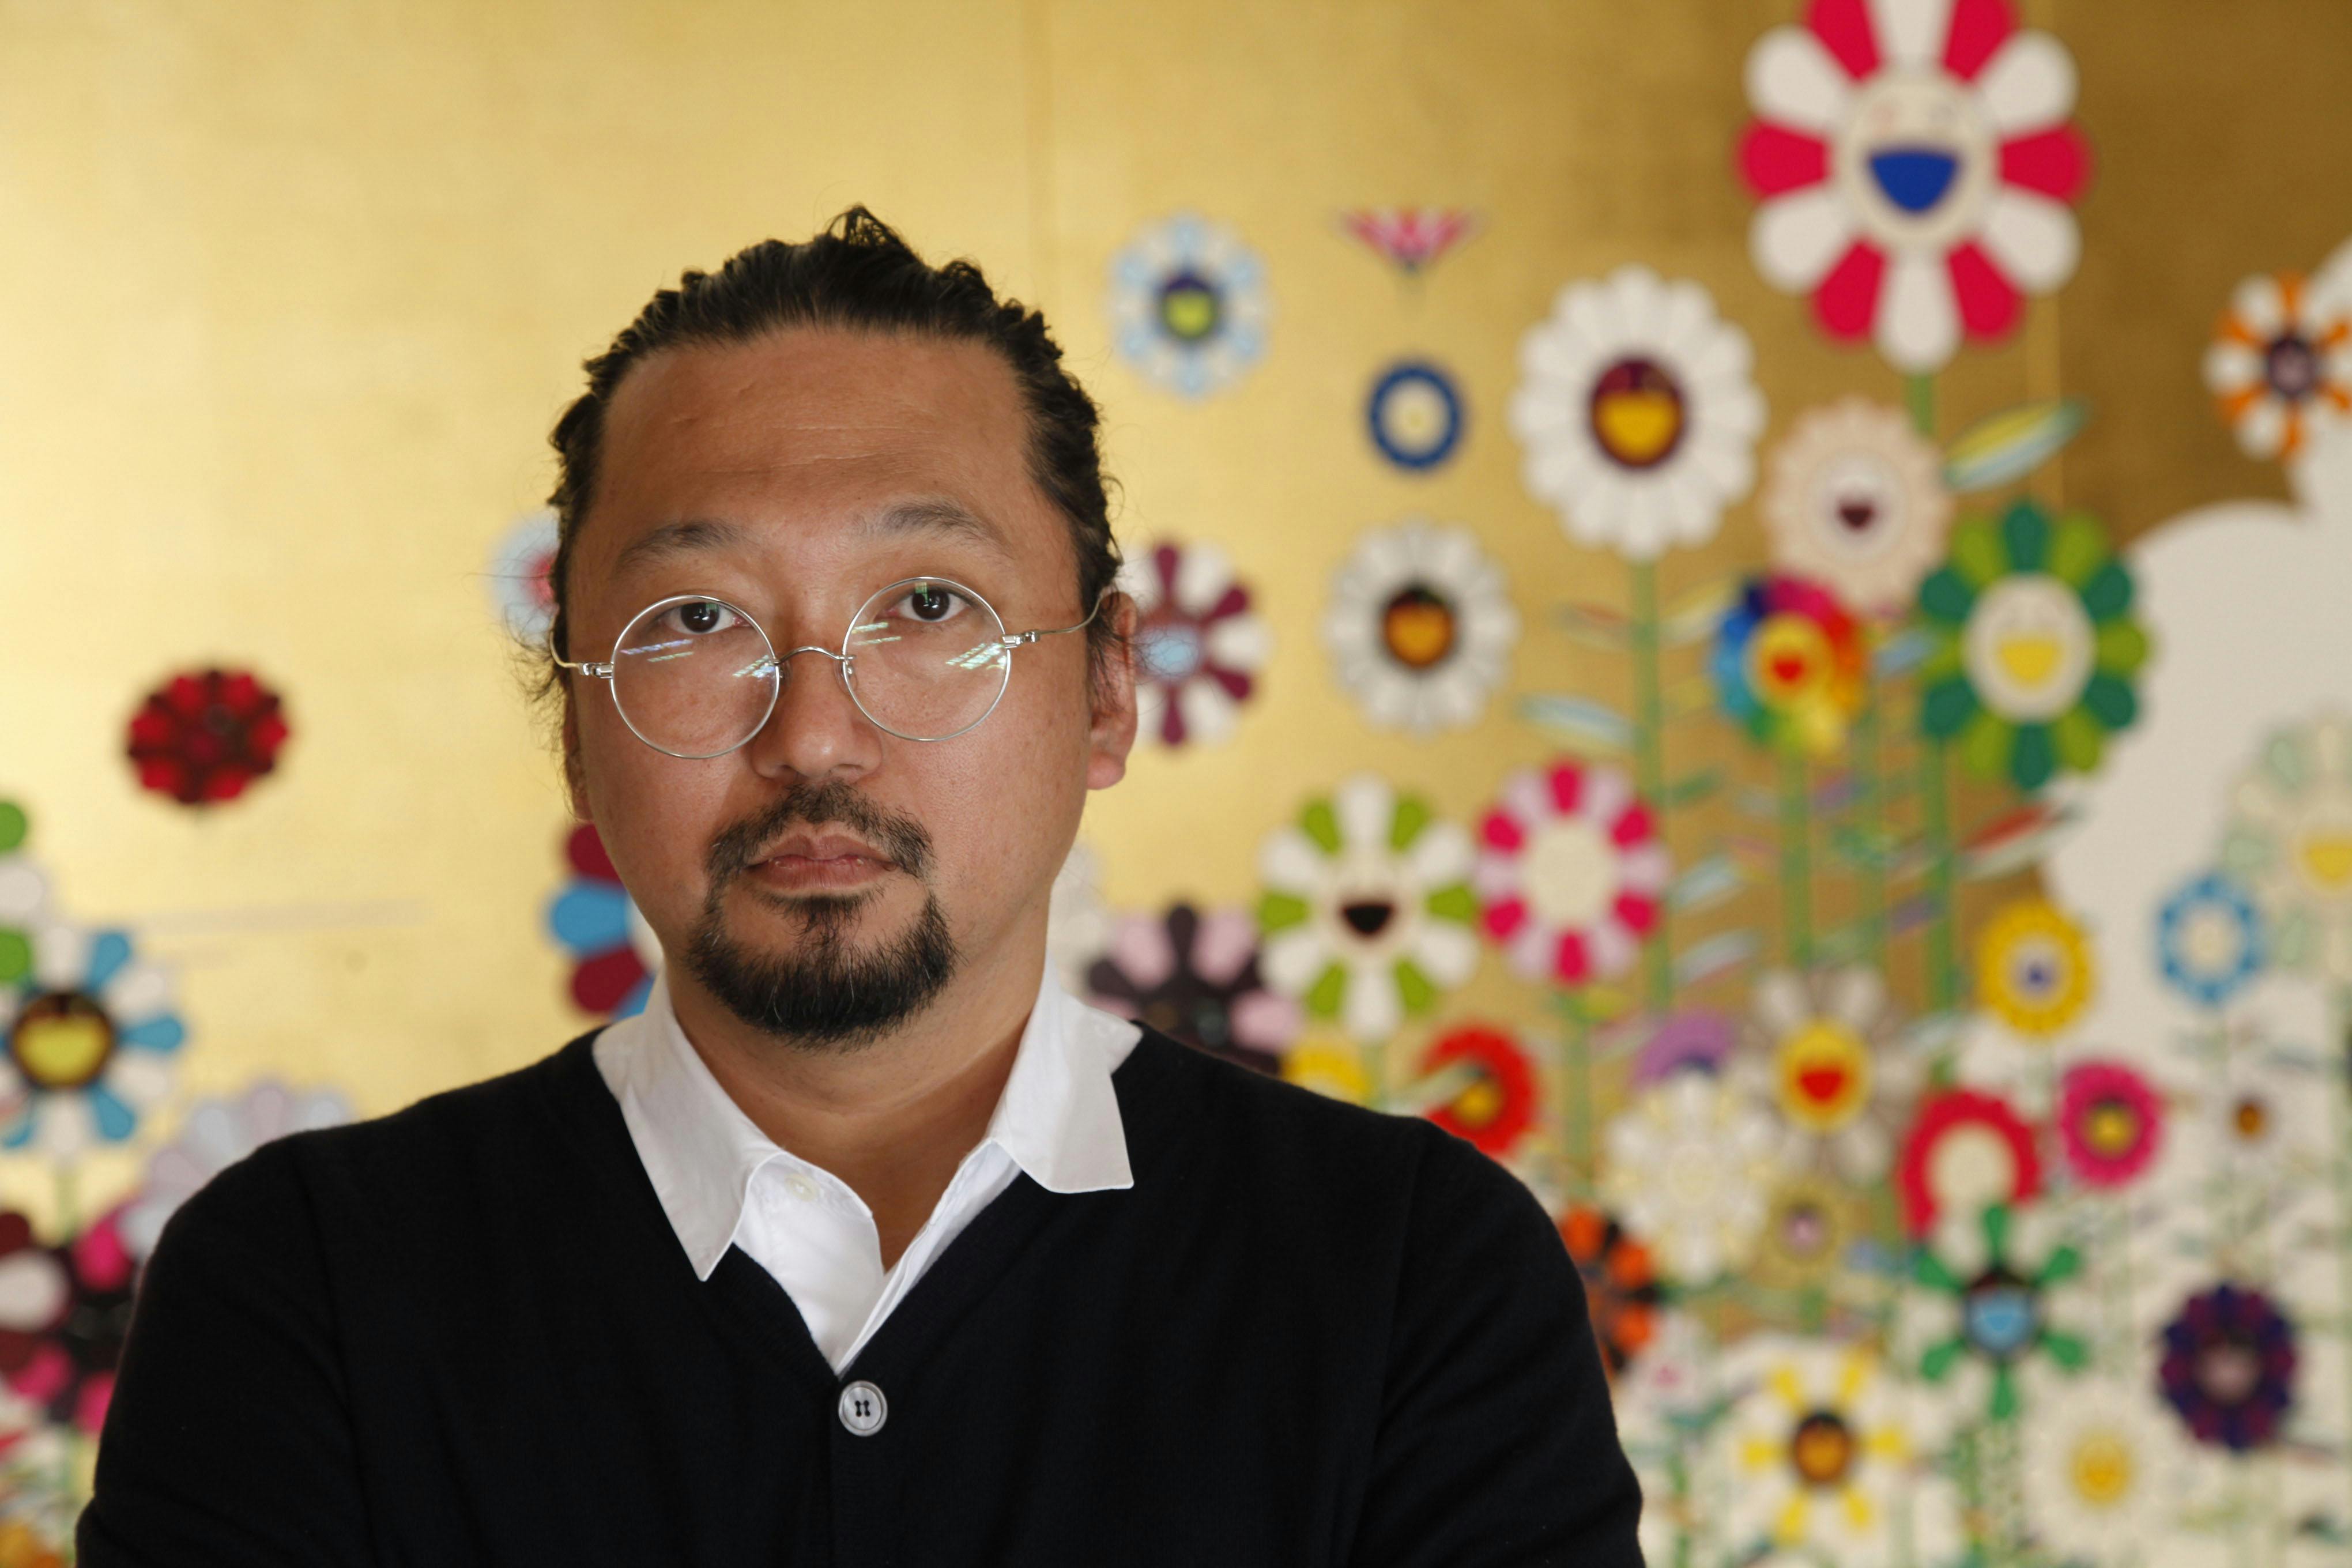 Takashi Murakami, Biography, Art, Louis Vuitton, Kanye West, & Facts